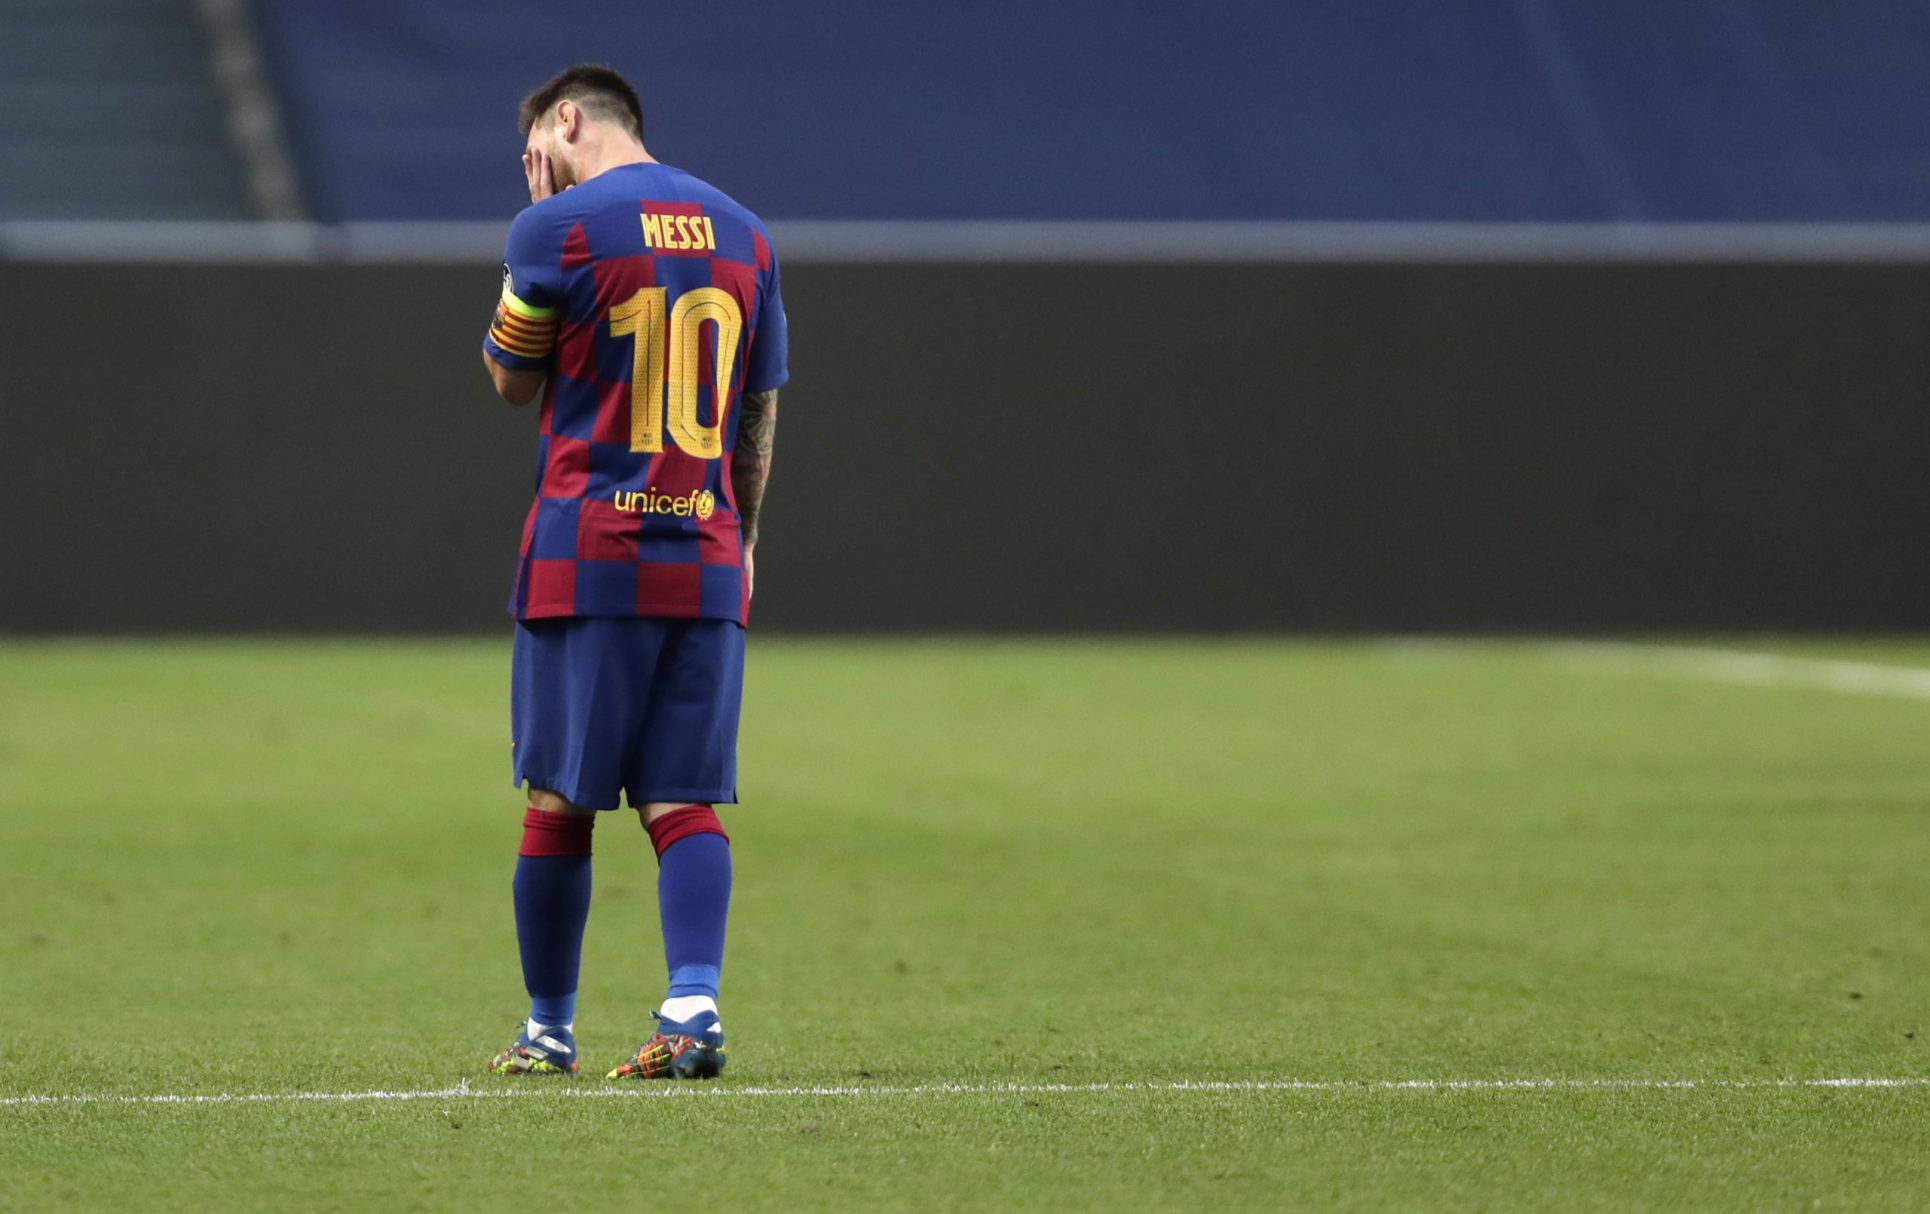 En medio de las dudas por continuidad de Messi, nuevo entrenador del Barça confía en que ‘La Pulga’ no se irá